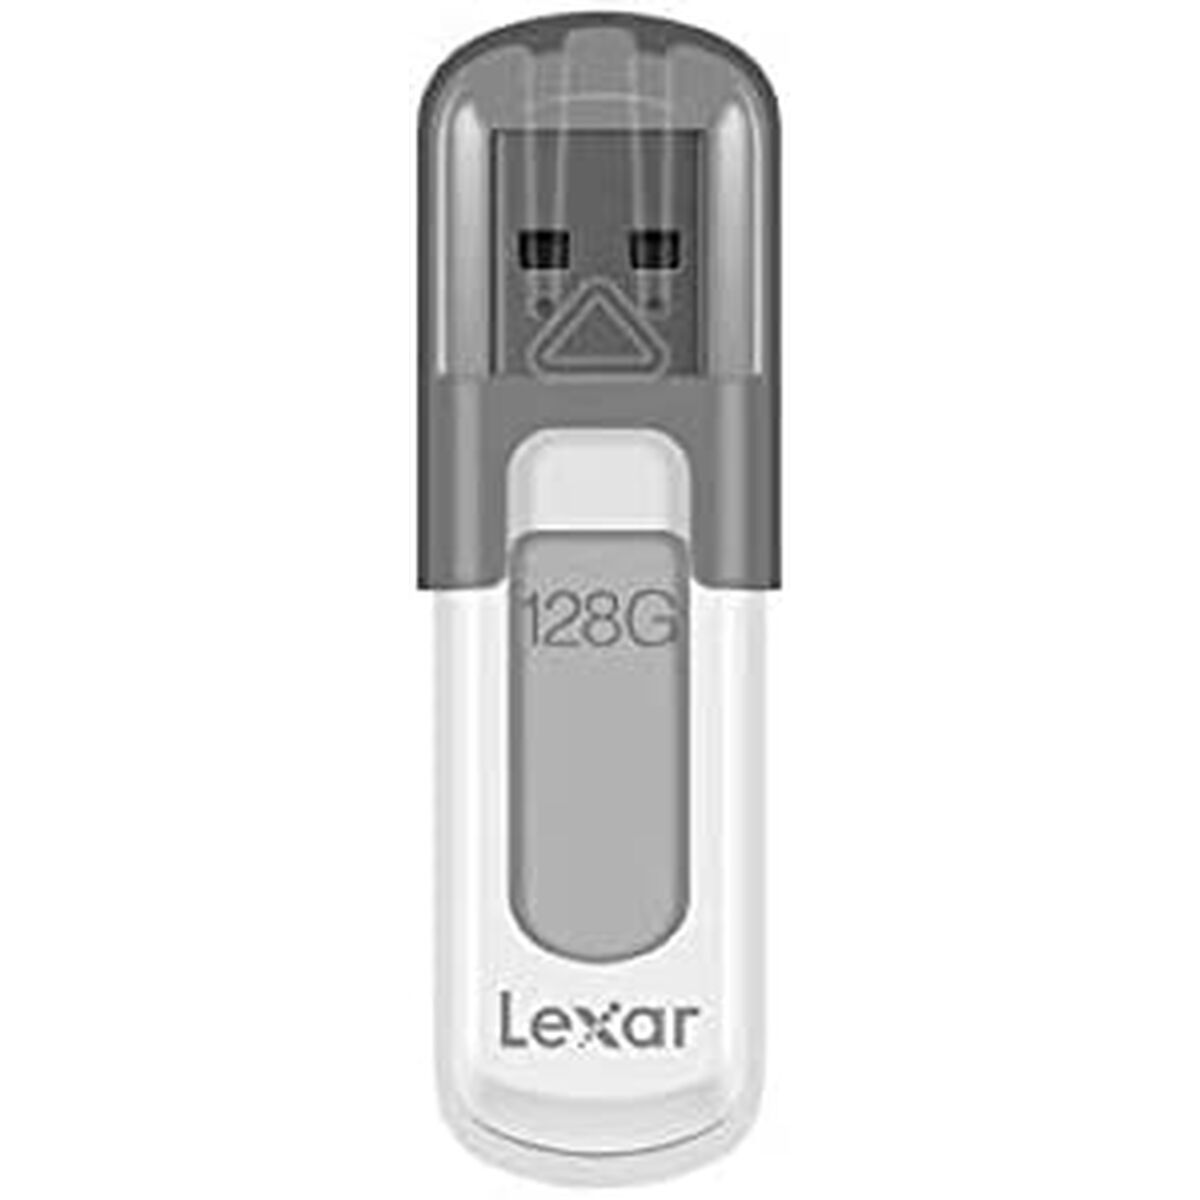 Osta tuote USB-tikku Lexar JumpDrive V100 Valkoinen Valkoinen/Harmaa 128 GB verkkokaupastamme Korhone: Tietokoneet & Elektroniikka 10% alennuksella koodilla KORHONE